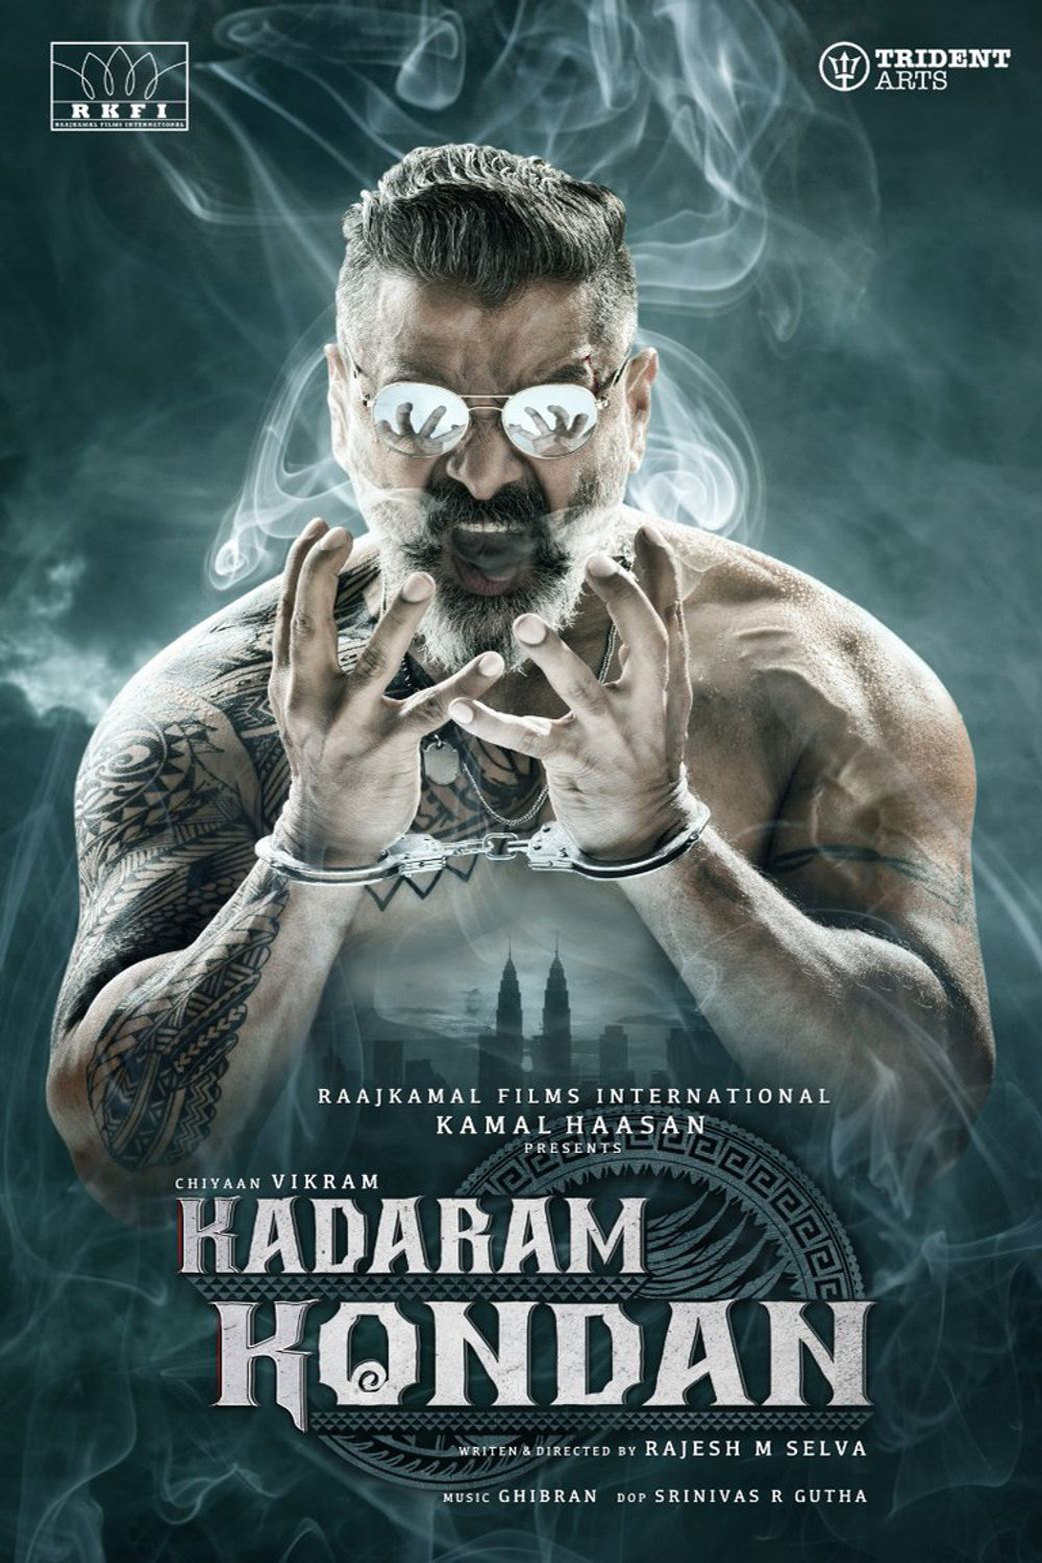 دانلود فیلم هندی 2019 Kadaram Kondan با زیرنویس فارسی و دوبله فارسی